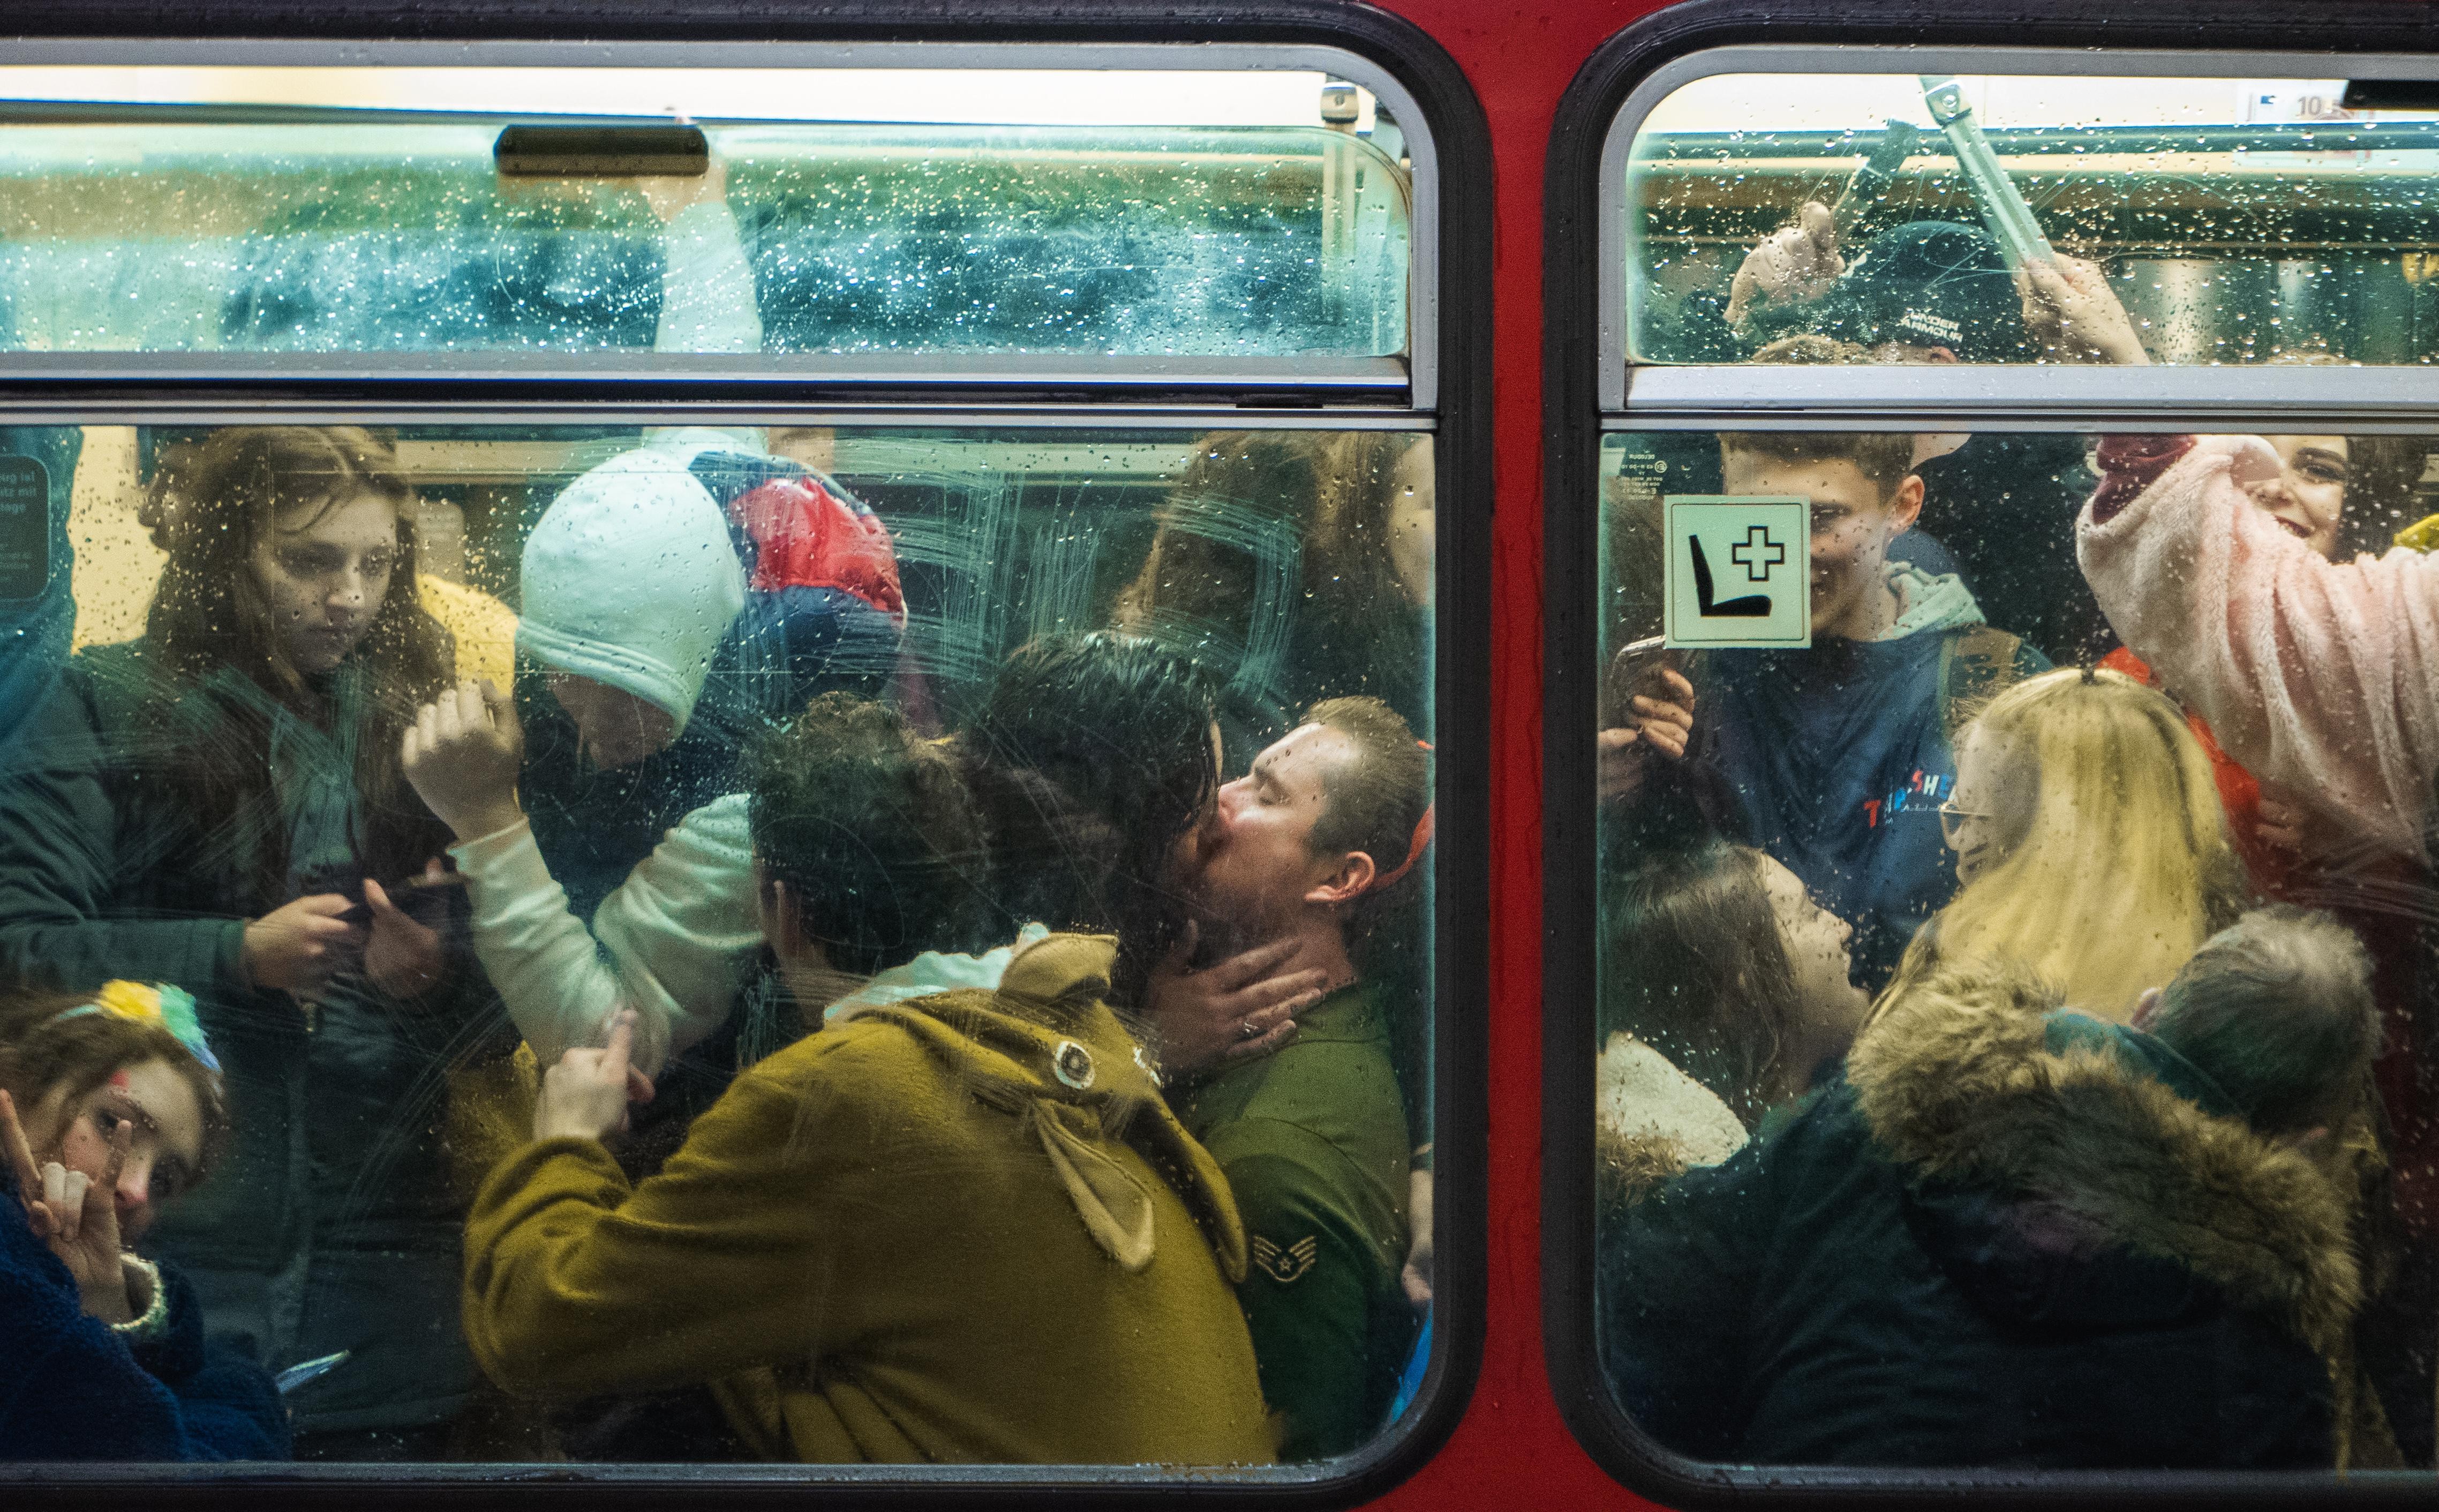 Ренессансное метро. Дюссельдорф, Германия, февраль 2020 года. Фотограф noahlikesphotos (@nbrelage)